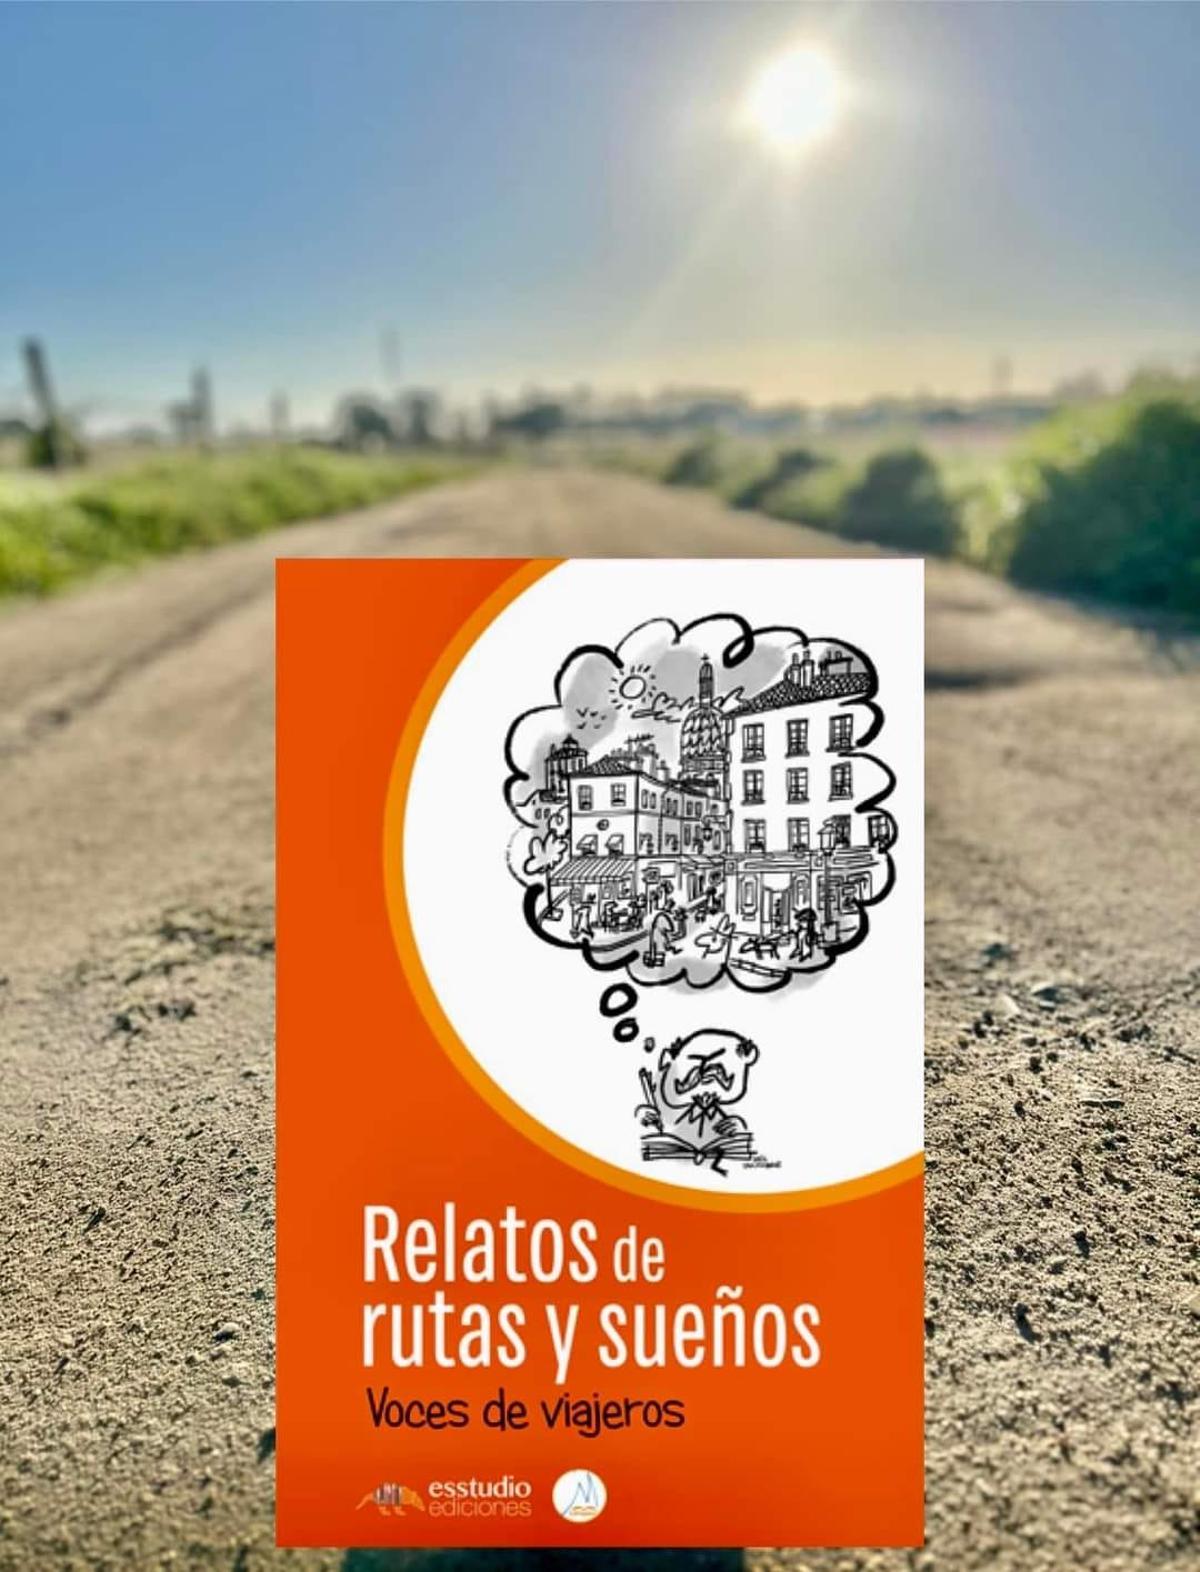 'Relatos de rutas y sueños', el libro benéfico que se podrá adquirir en la feria.